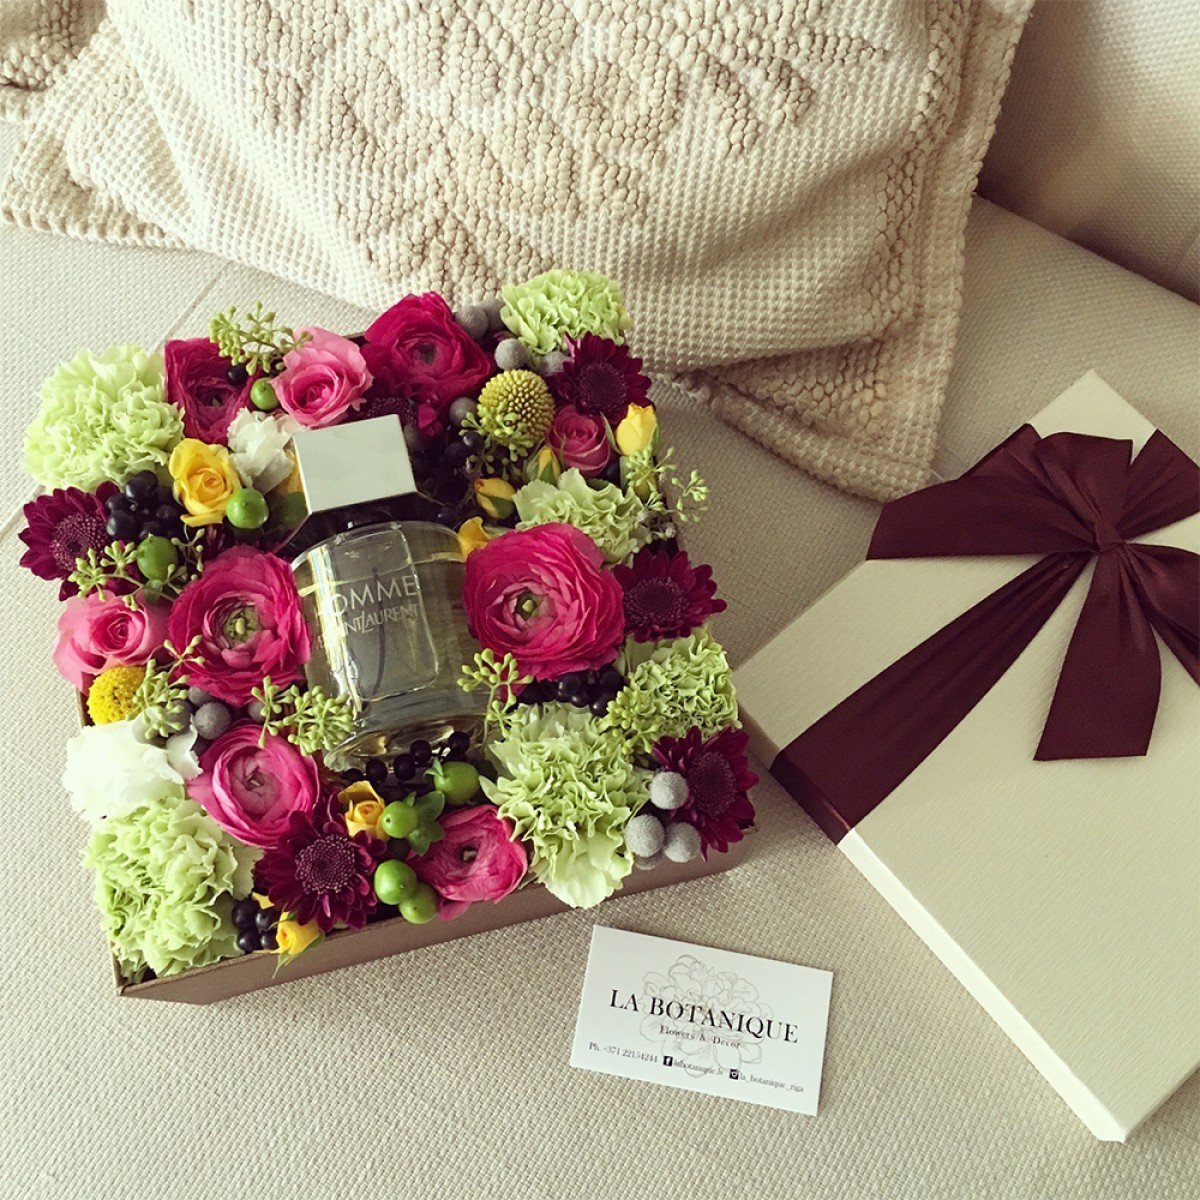 Хочу цветы и подарки. Цветы в подарок. Цветы в коробочке. Подарок с цветами в коробке. Красивые коробки с цветами.